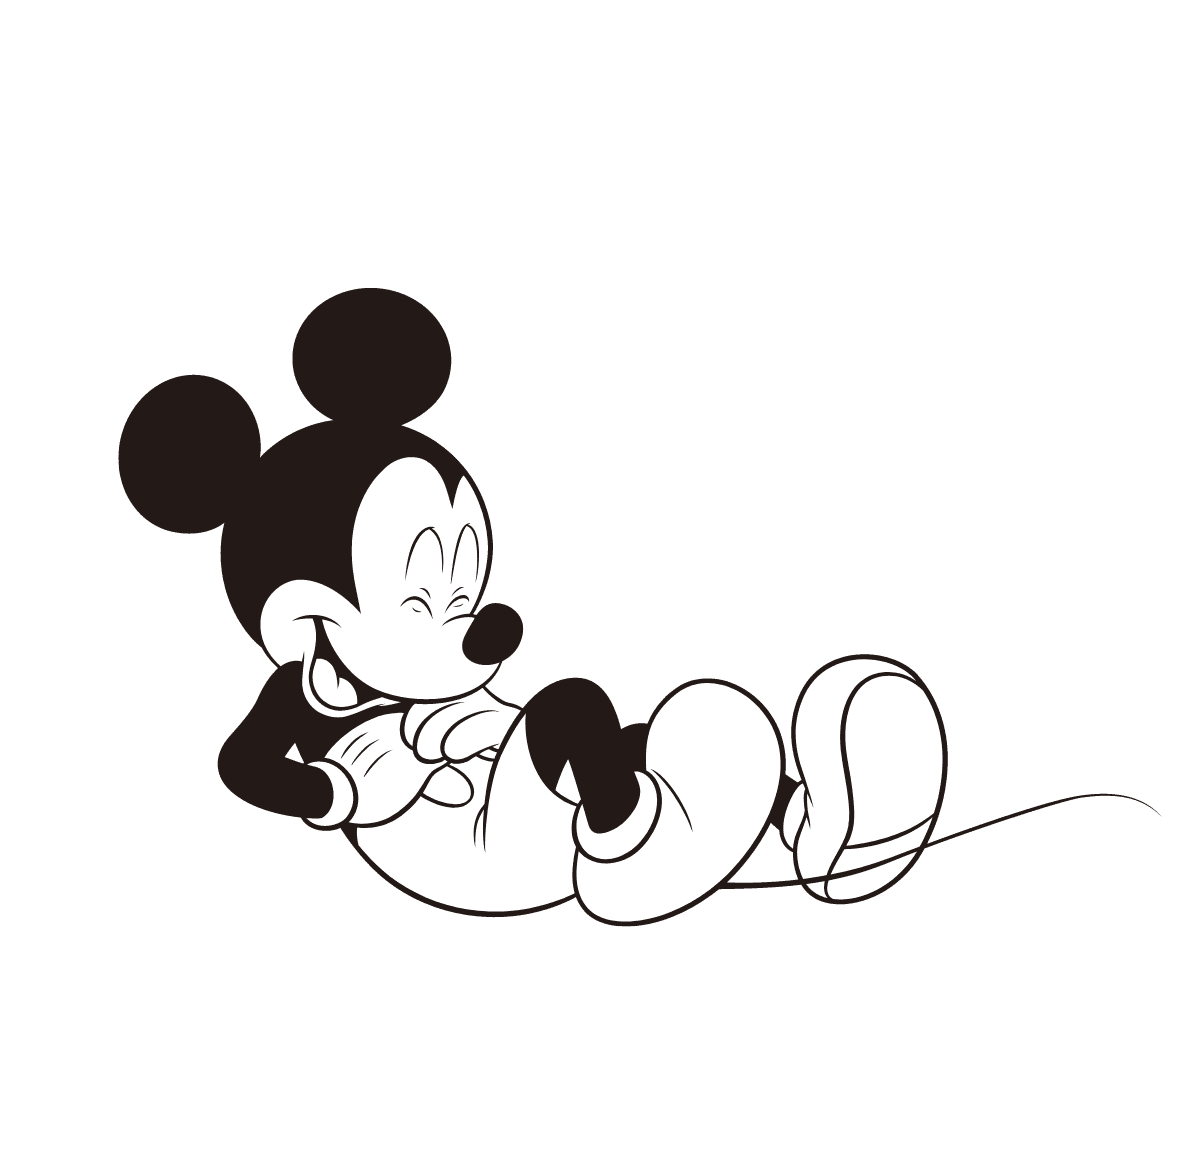 Un GIF animé de Mickey Mouse qui regarde au loin vers le haut, puis qui se retourne pour danser de manière enjouée.